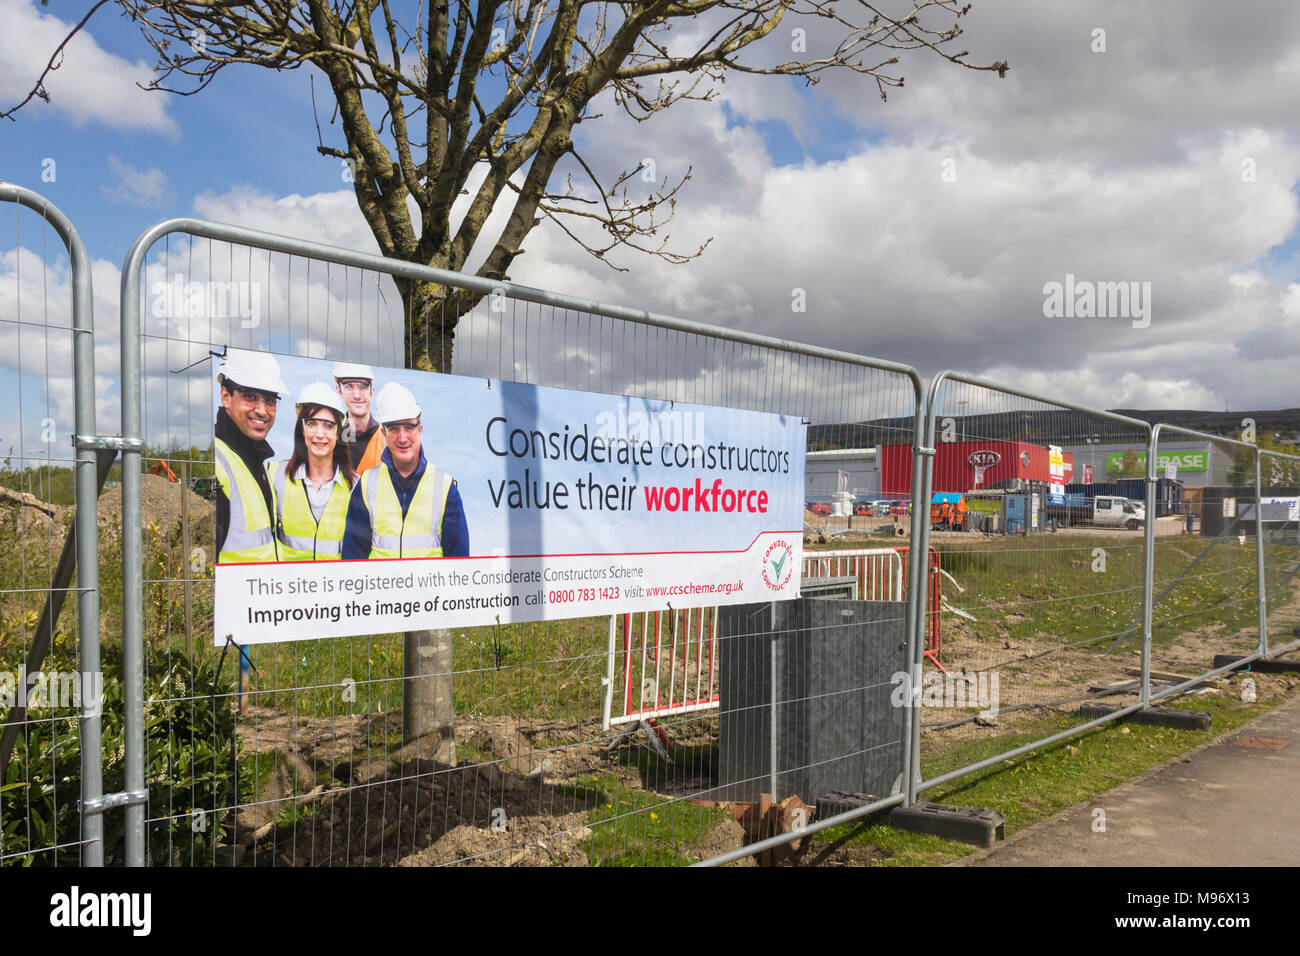 Rücksichtsvoll Konstruktoren banner befestigt die Umzäunung einer Baustelle Middlebroo Retail Park in der Nähe von Bolton. Stockfoto